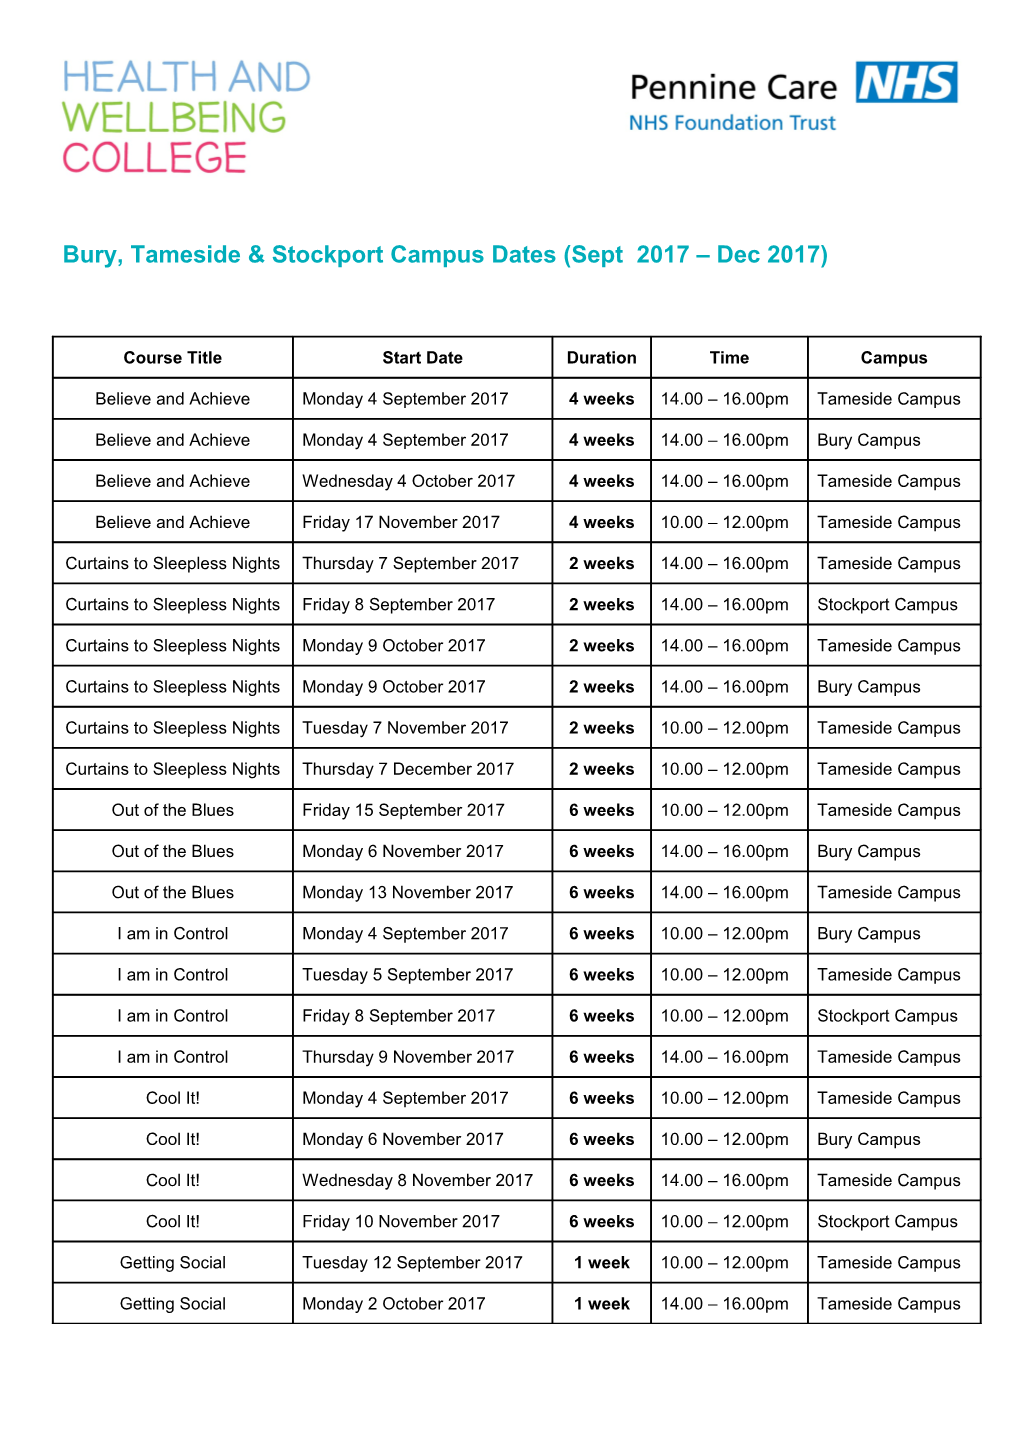 Bury, Tameside & Stockport Campus Dates (Sept 2017 Dec 2017)